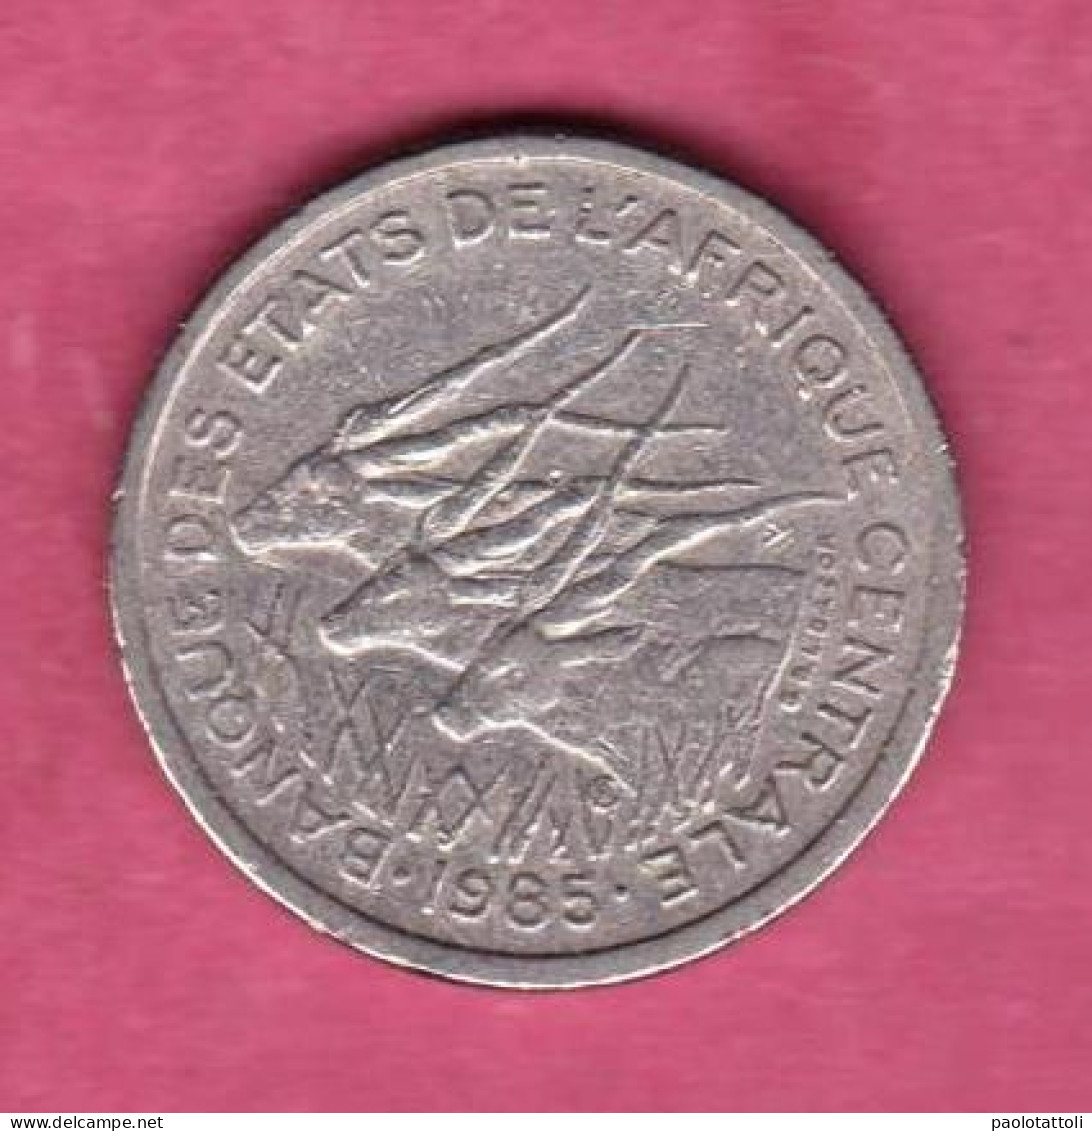 Gabon ( D), 1985 - 50 Francs- Nickel- Obverse Gazelle Giant Eland. - Gabon